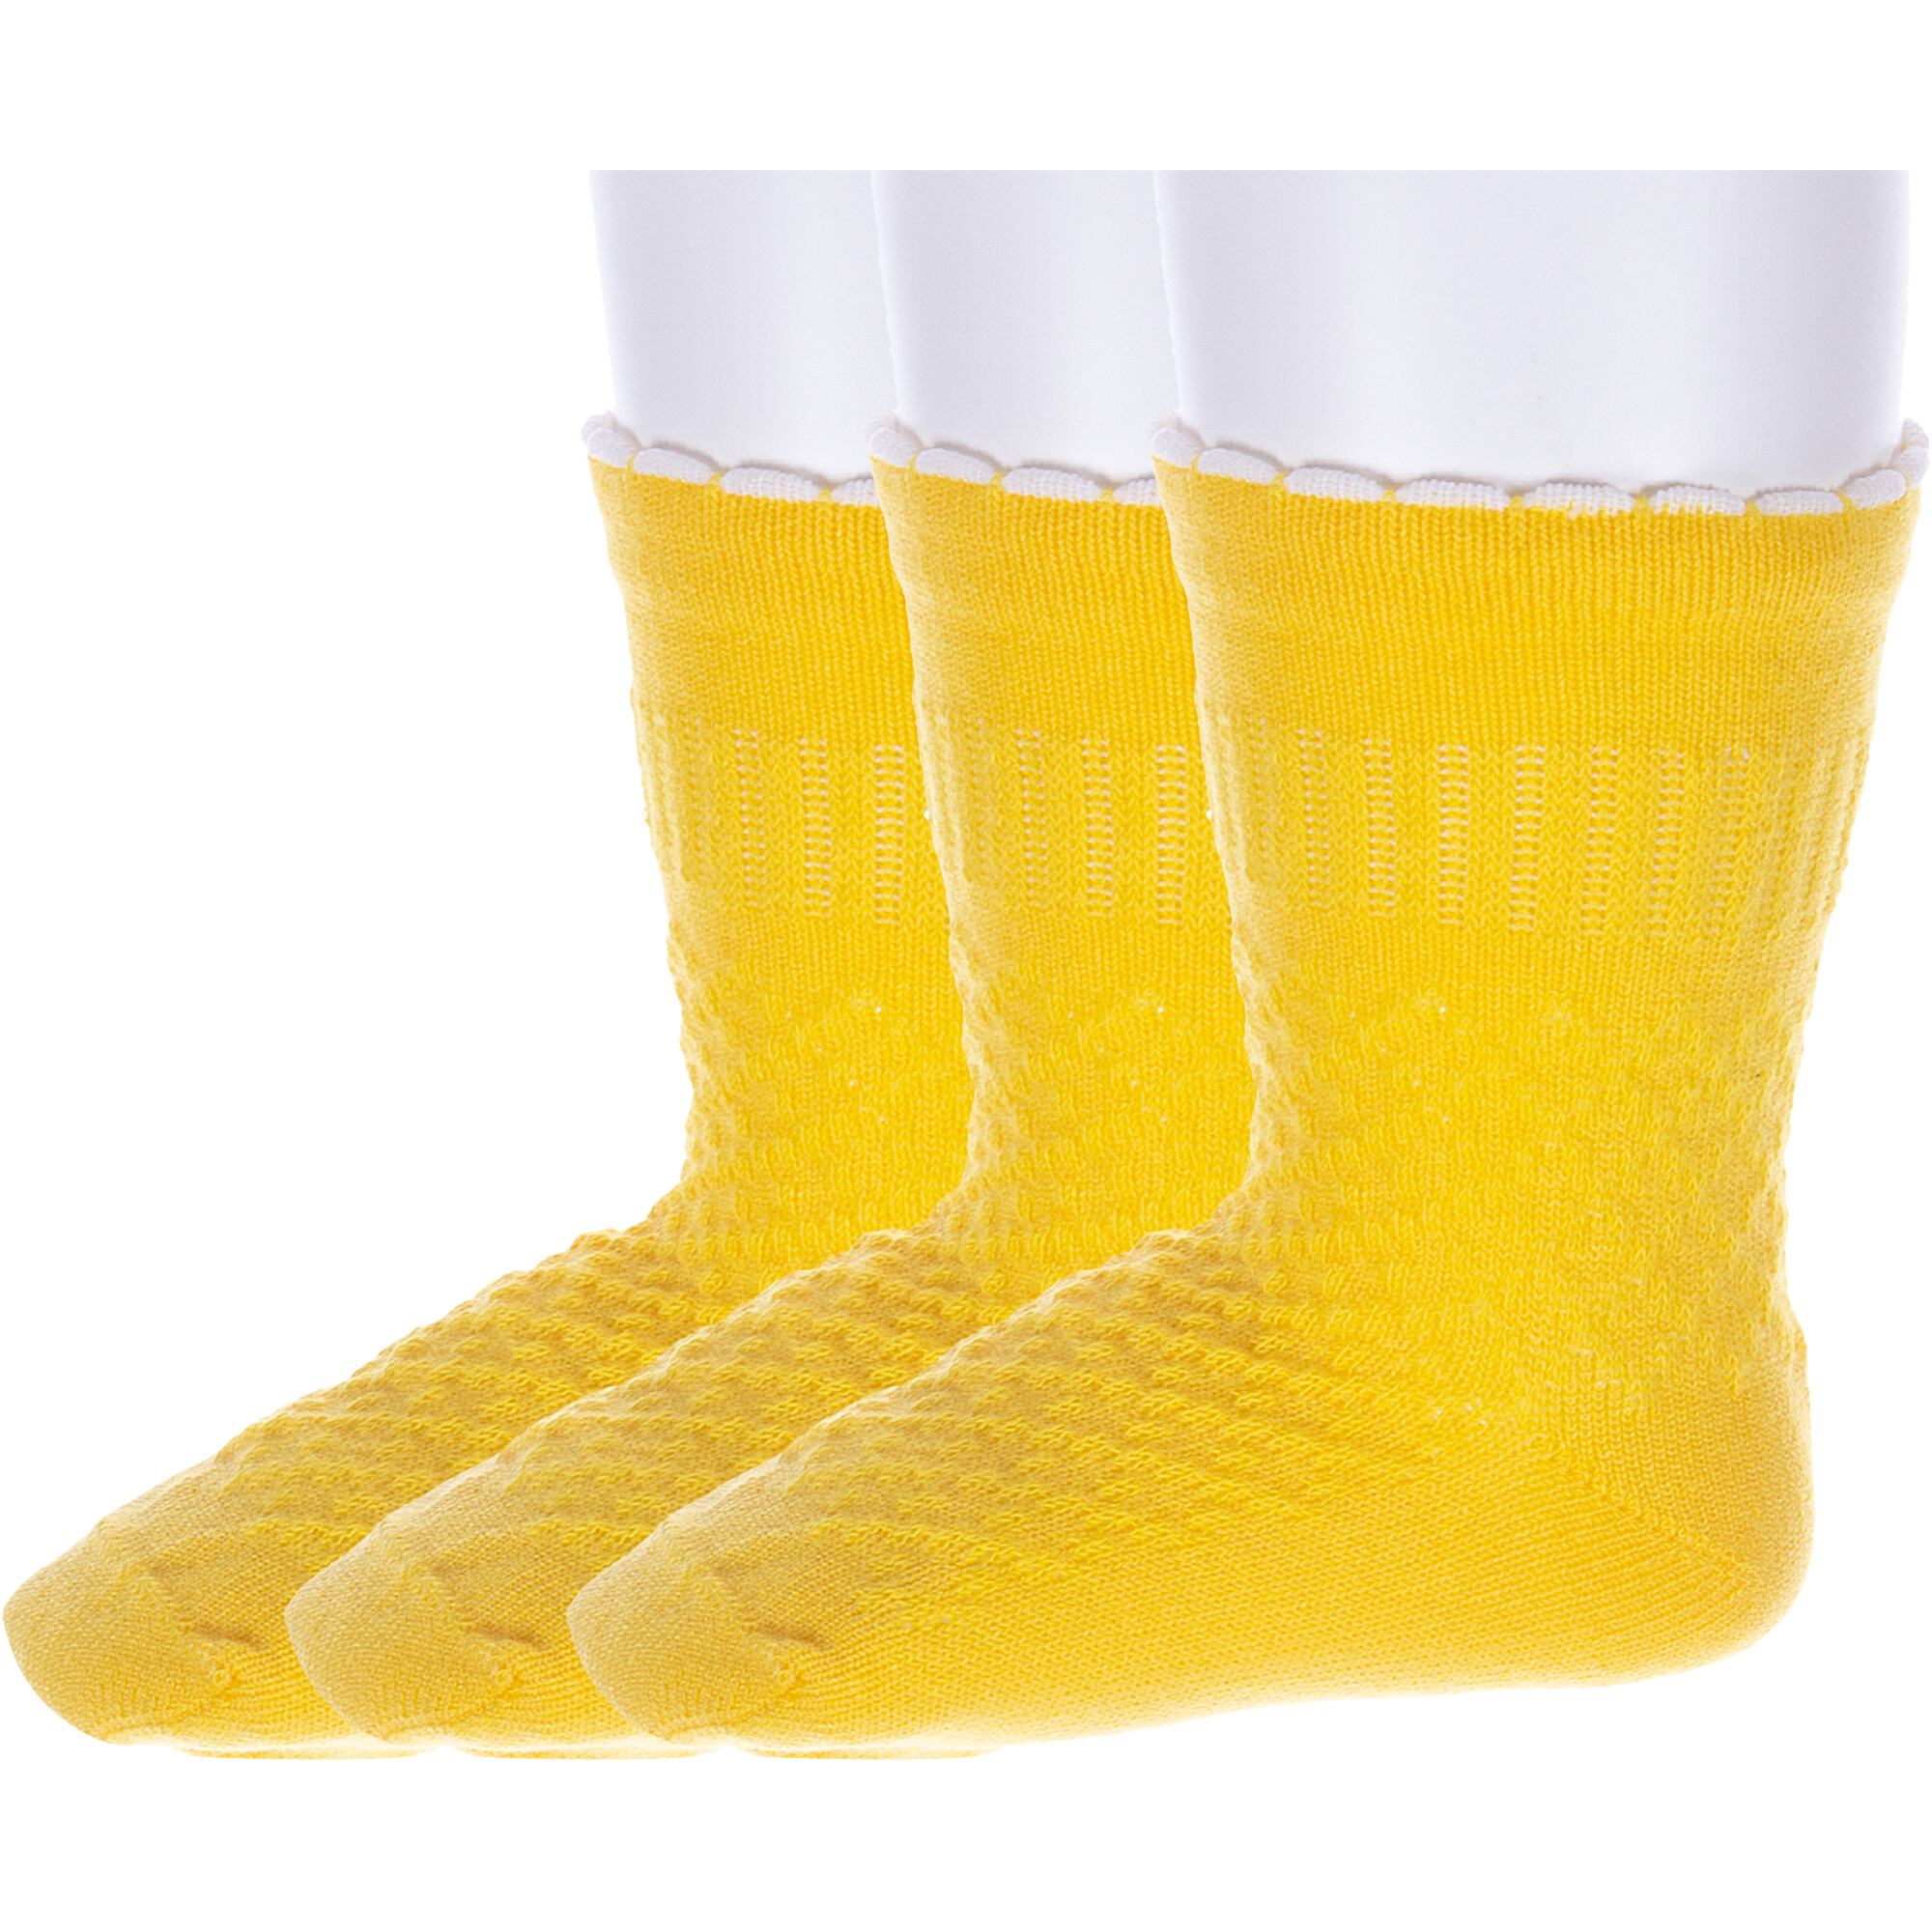 Носки детские Носкофф 3-ЛС58, желтые, 41974 носки велосипедные bbb bs0 07 highfeet 39 43 желтые 2973570742